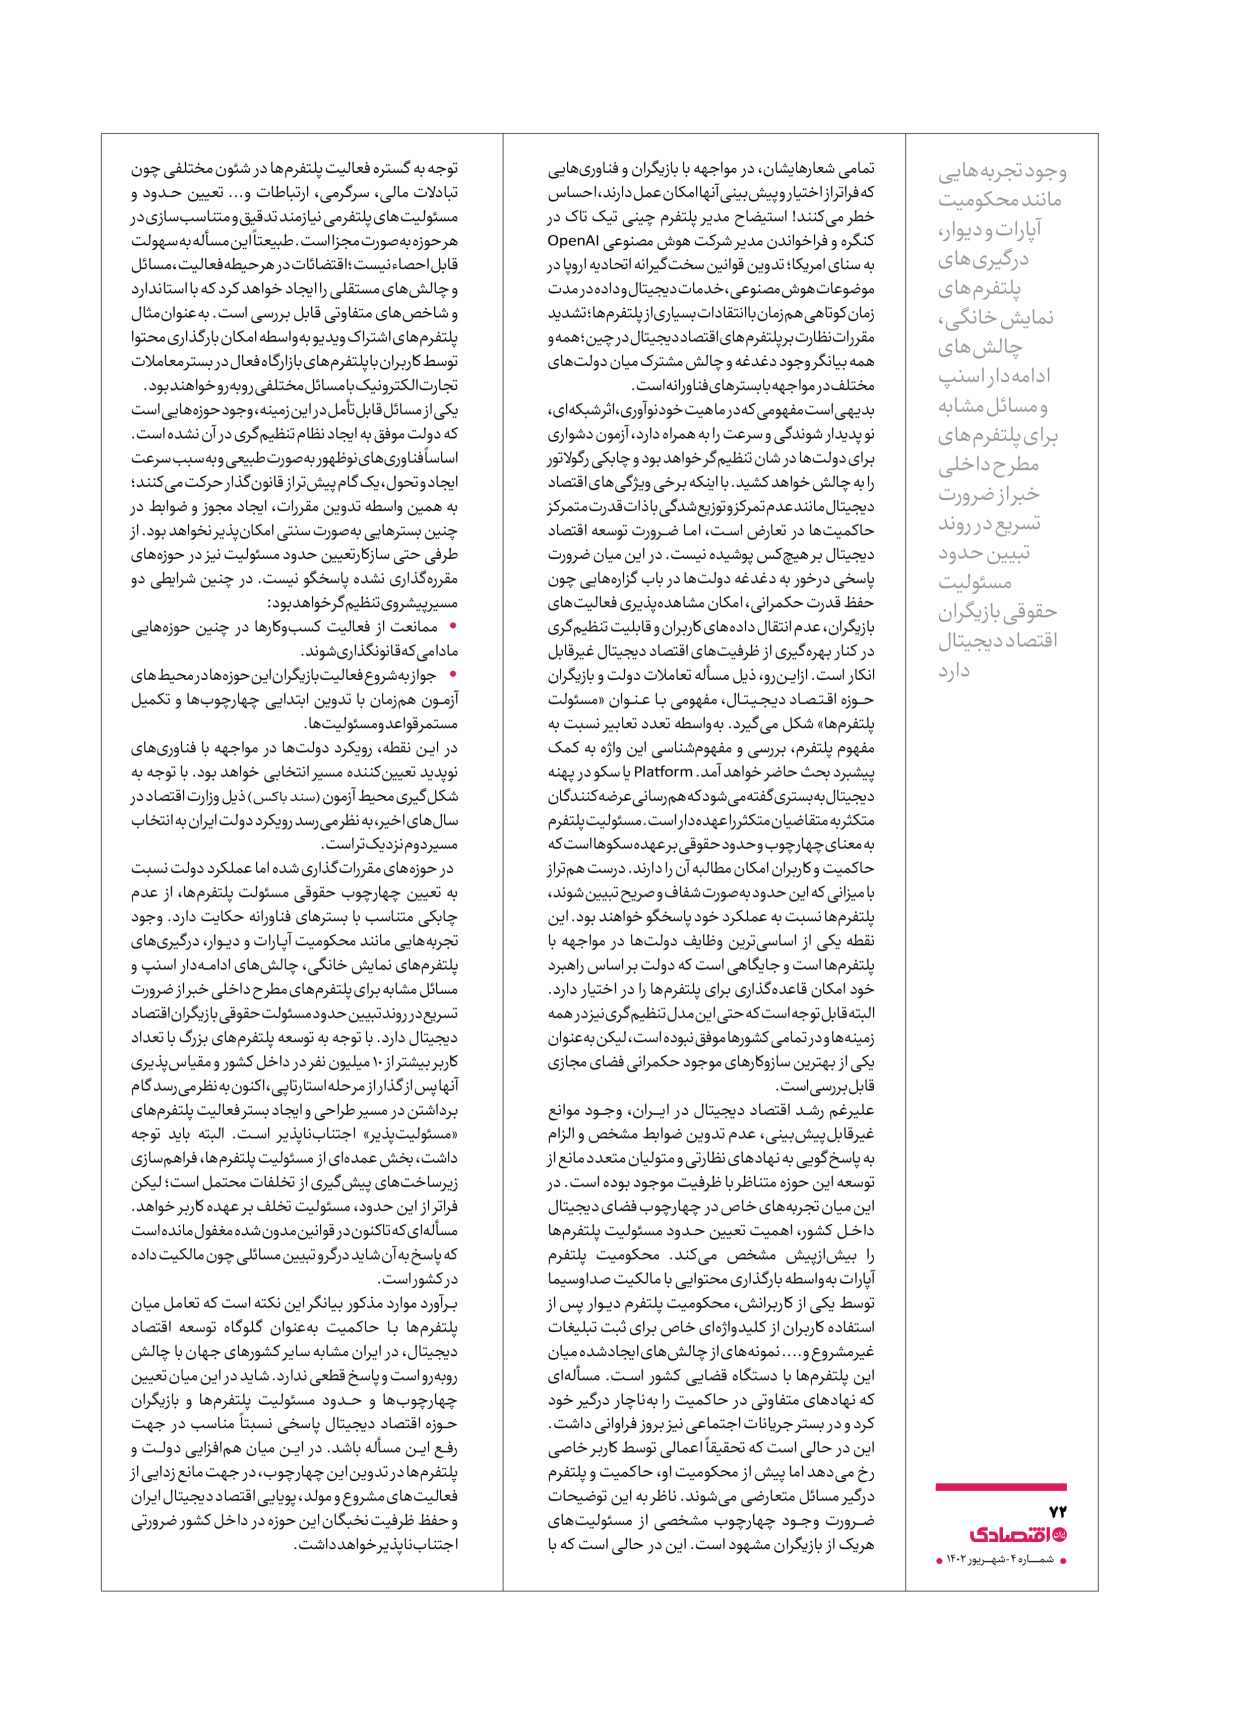 روزنامه ایران اقتصادی - ویژه نامه اقتصادی۴ - ۰۴ شهریور ۱۴۰۲ - صفحه ۷۲